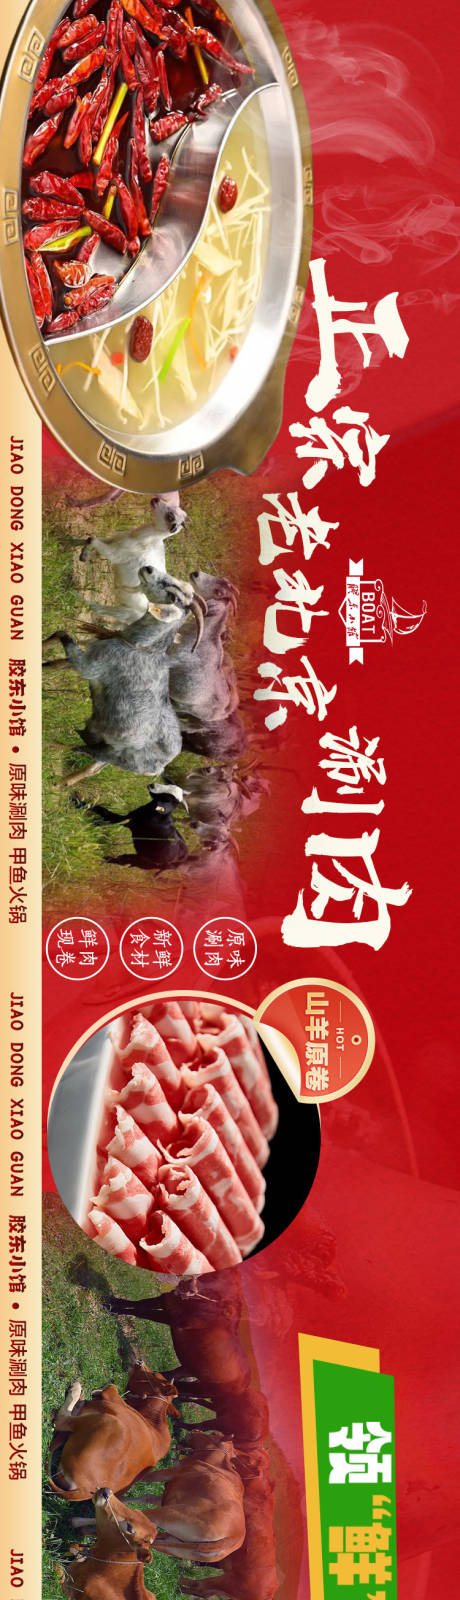 肥牛火锅甲鱼涮羊肉长图海报